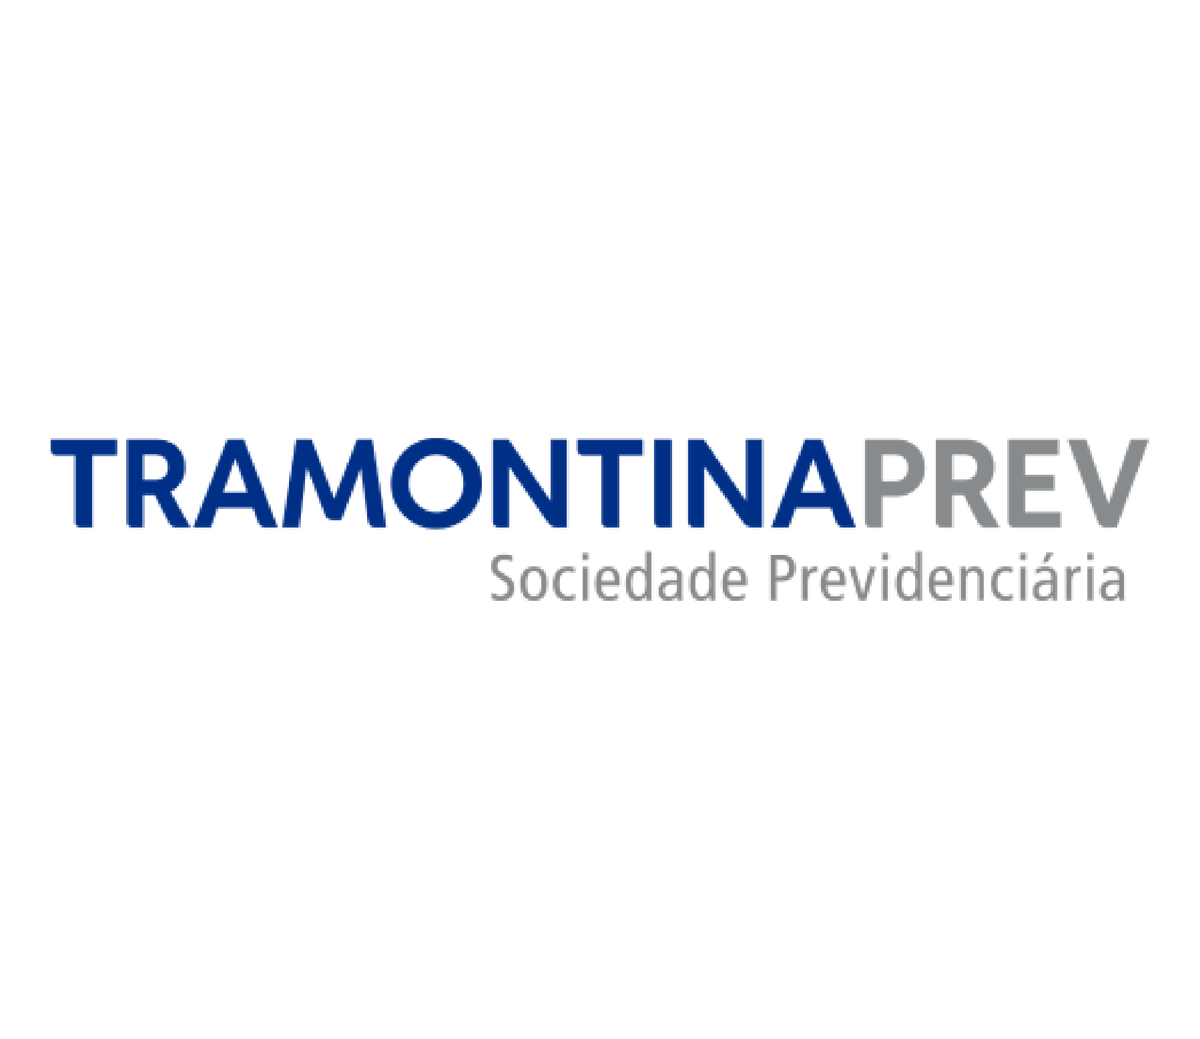 Logotipo Tramontina PREV: Sociedade Previdenciária.